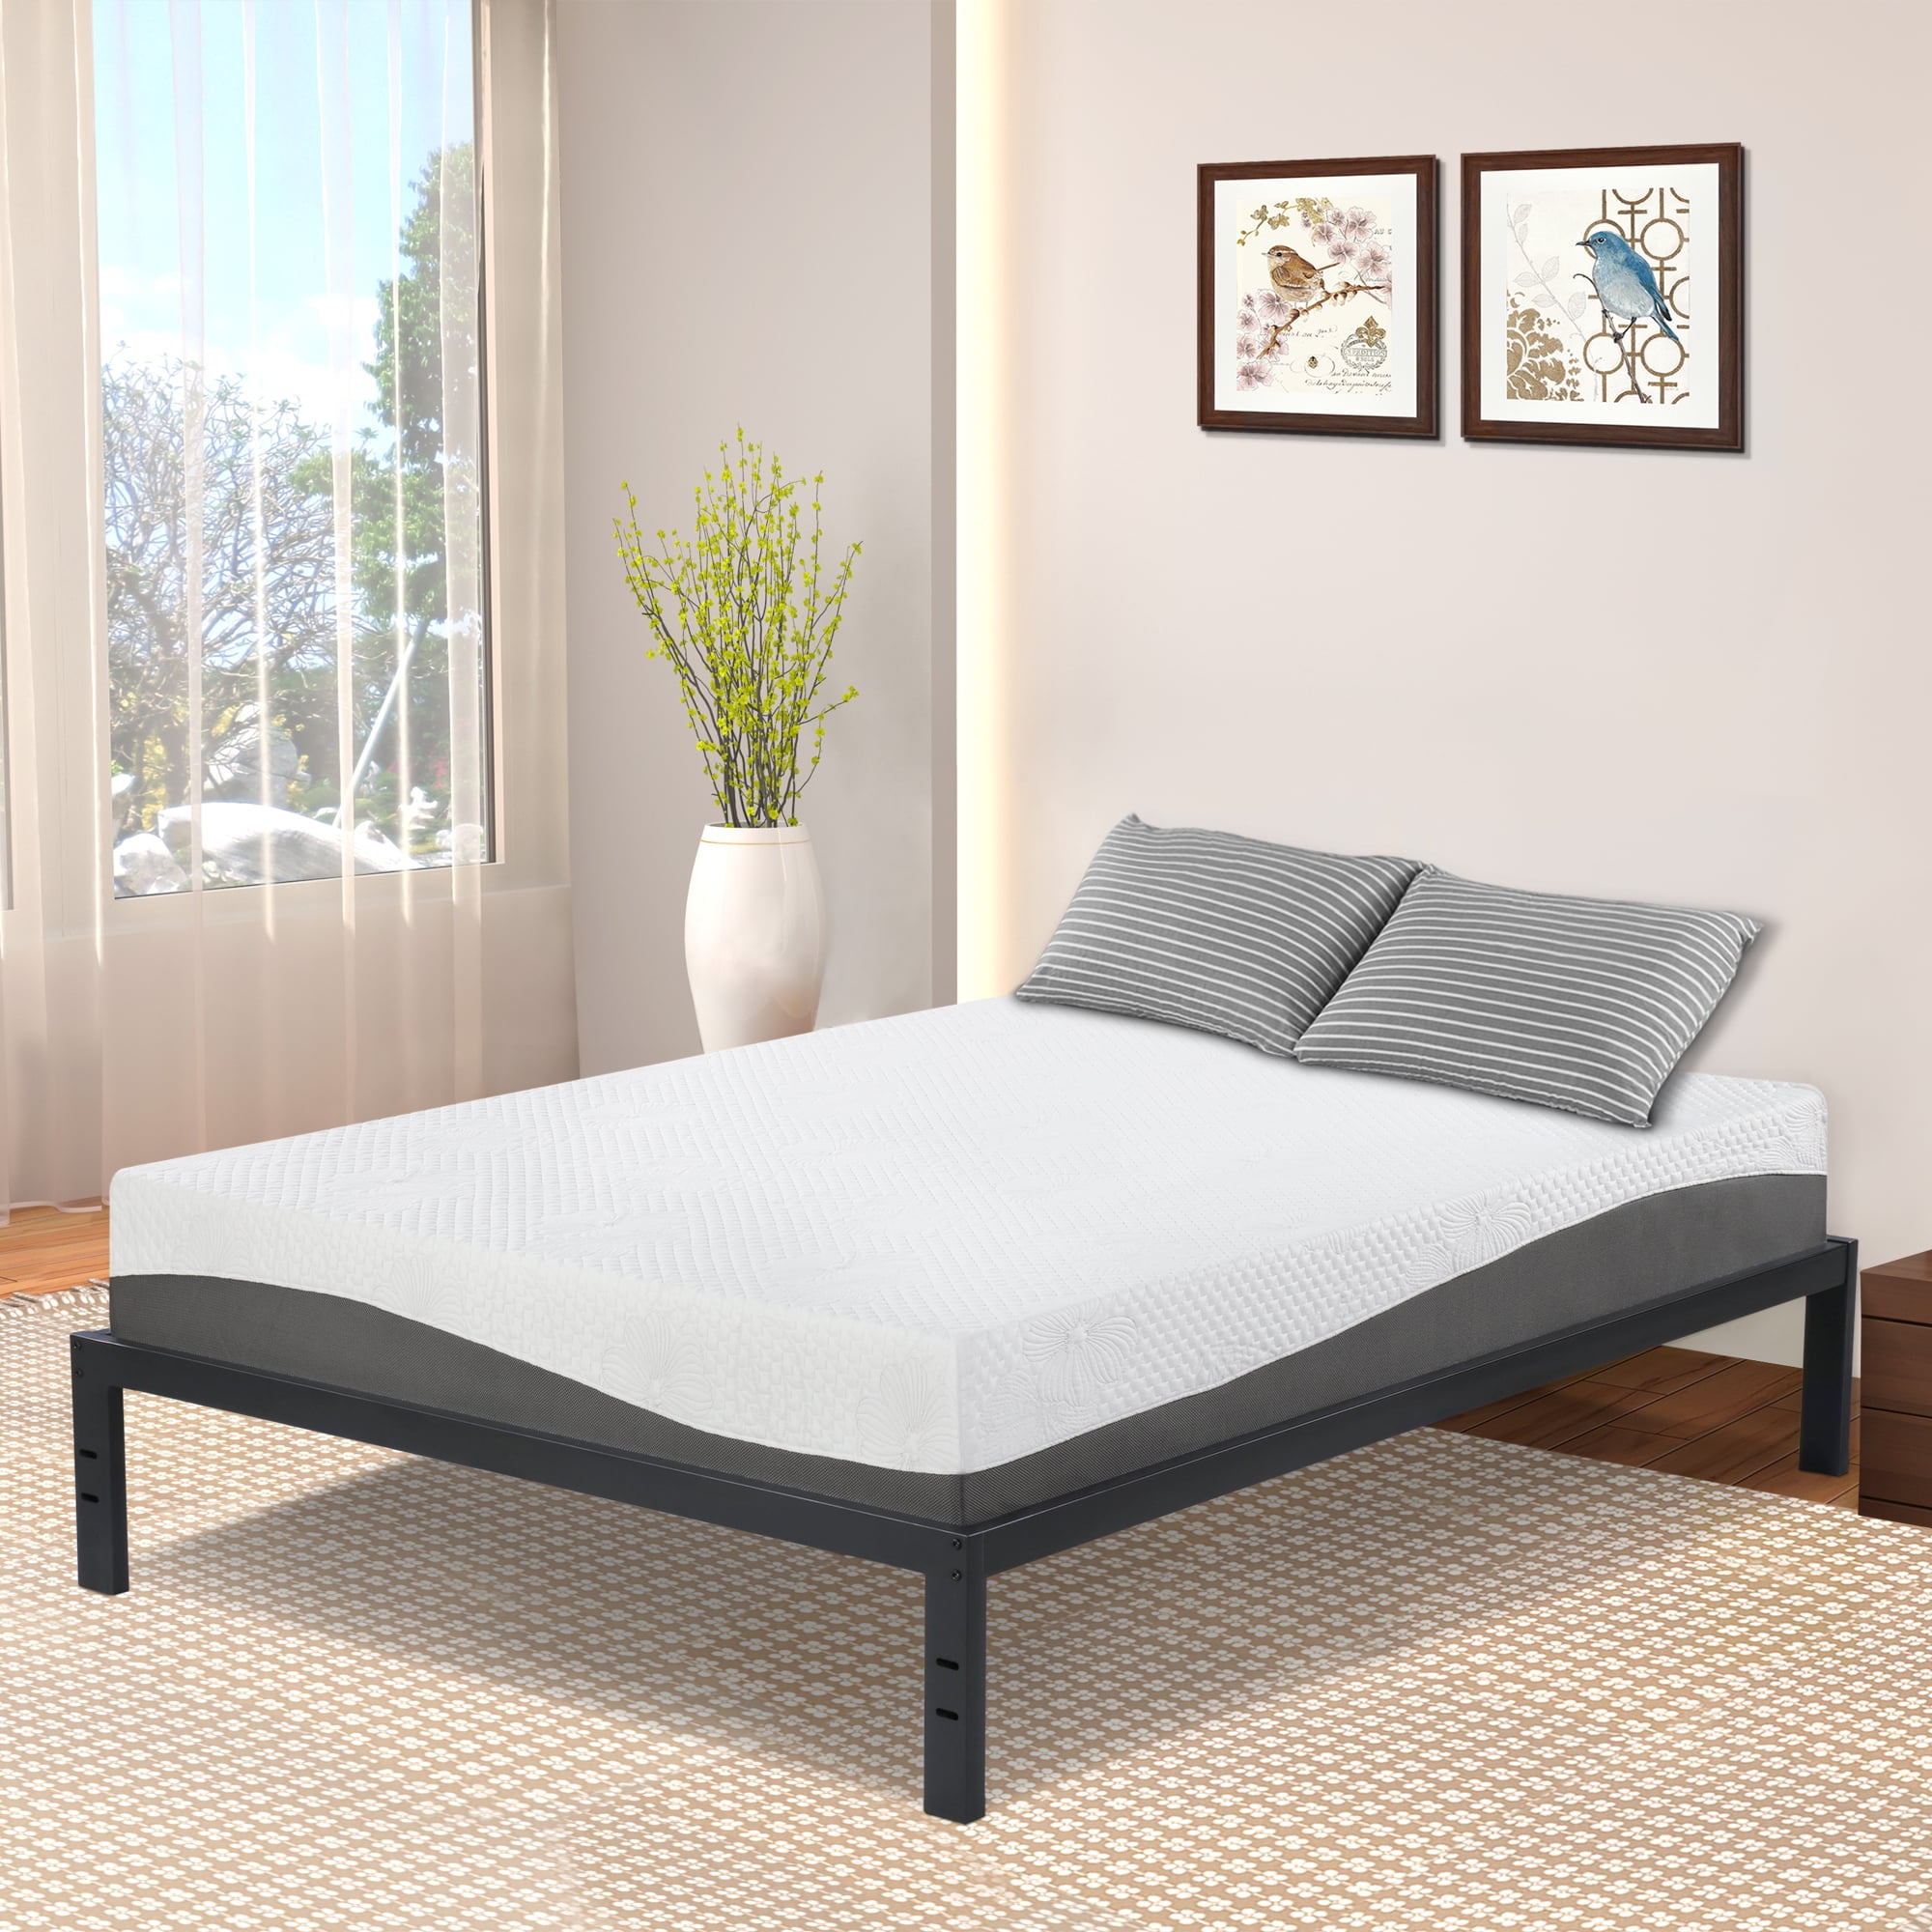 Granrest 14 Modern Dura Steel Slat Bed, Granrest 18 Inch Bed Frame